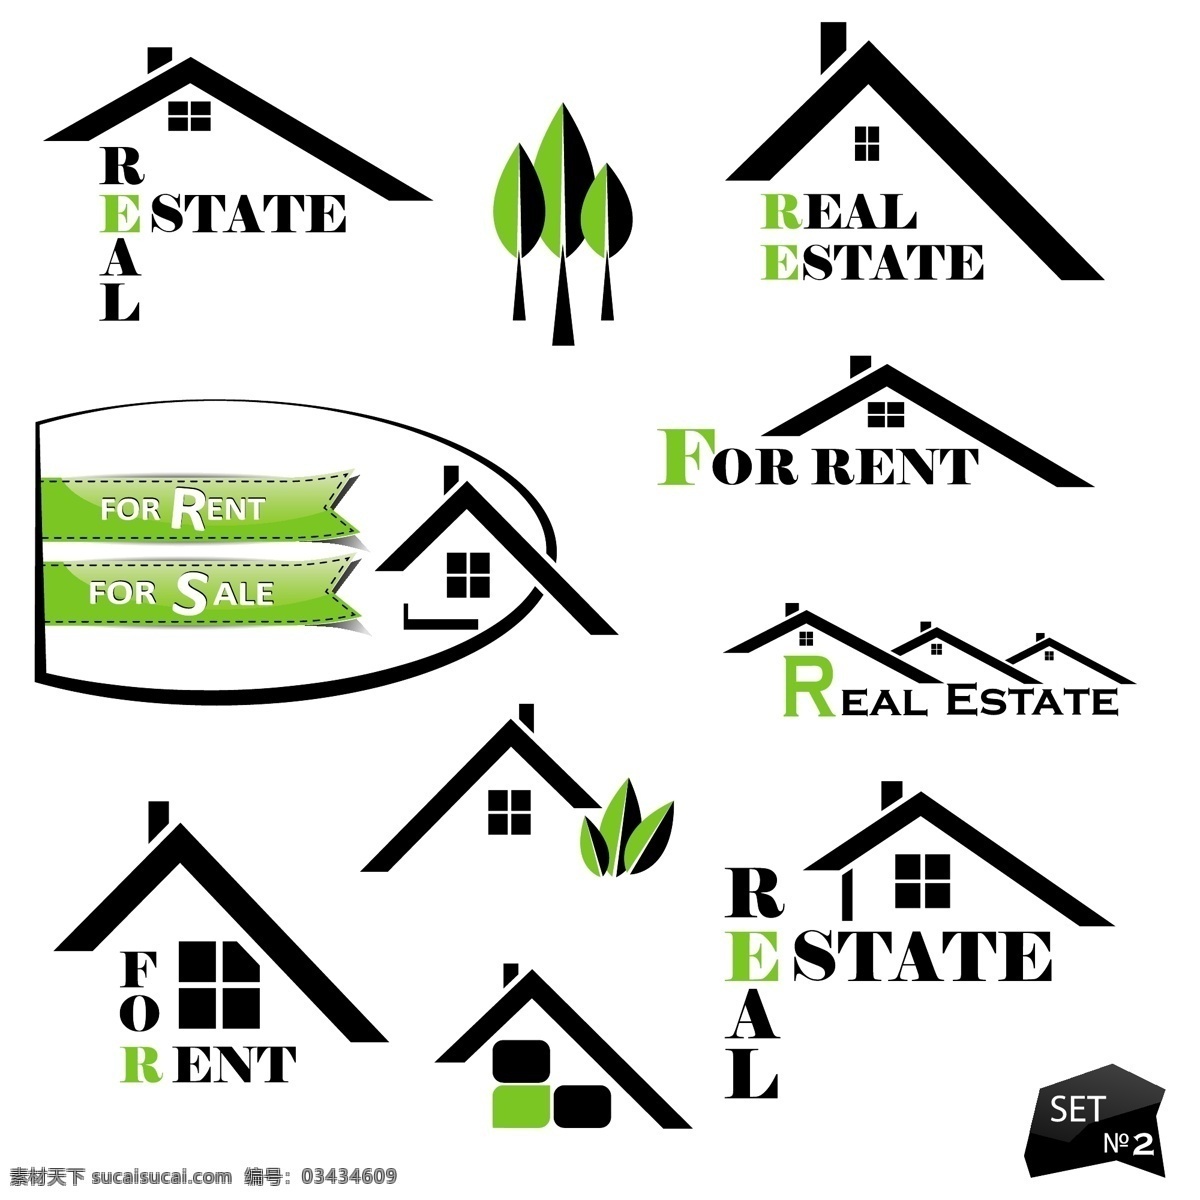 绿色 可爱 矢量 商标 房子 物资 装饰图案 设计元素 免费图标 源文件